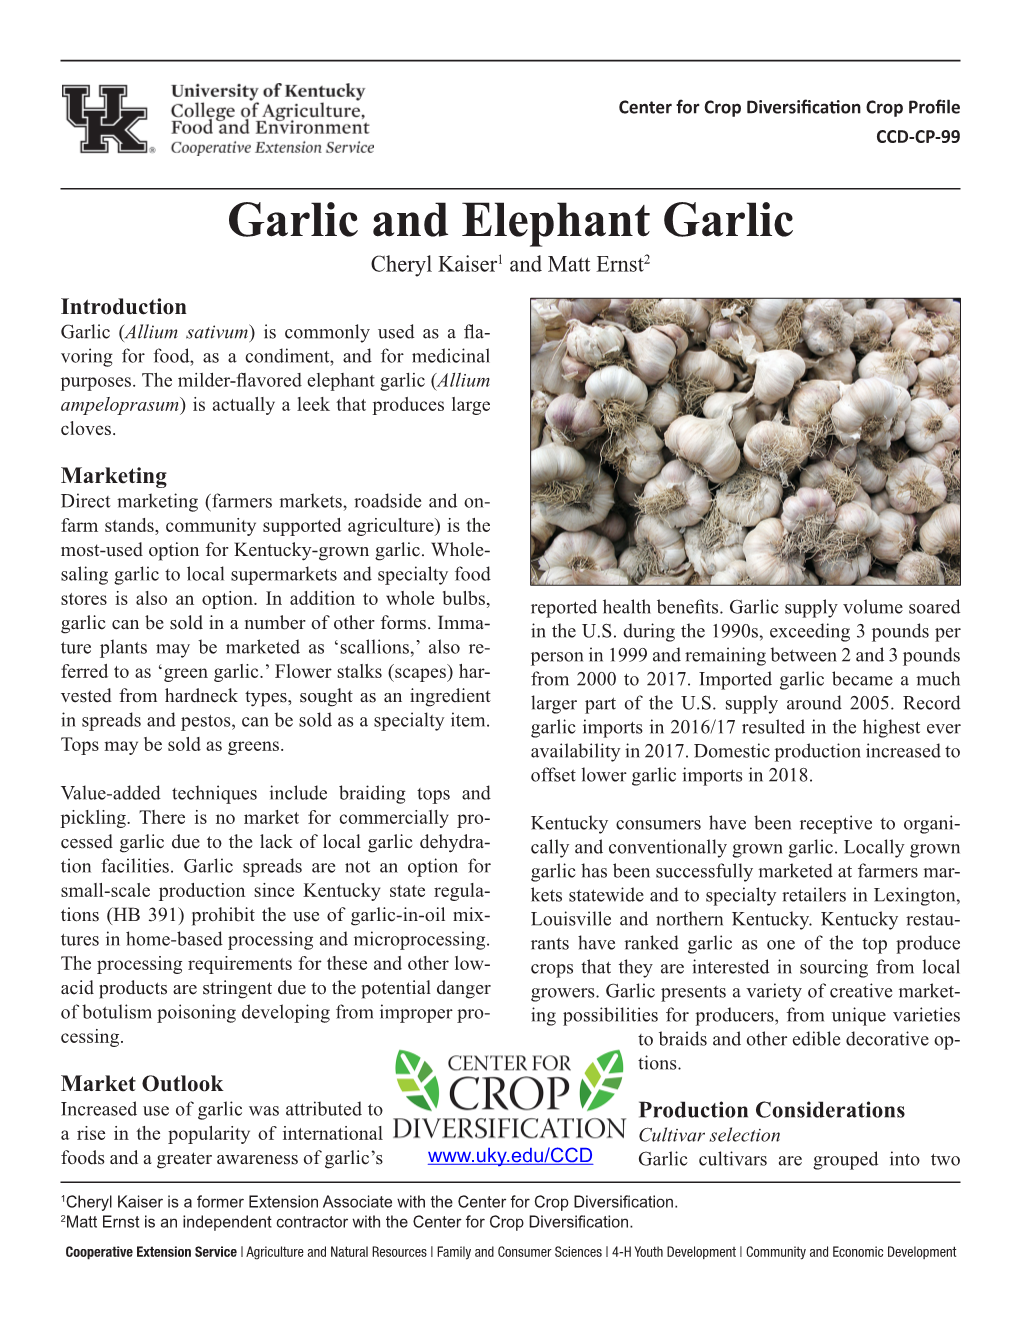 Garlic and Elephant Garlic